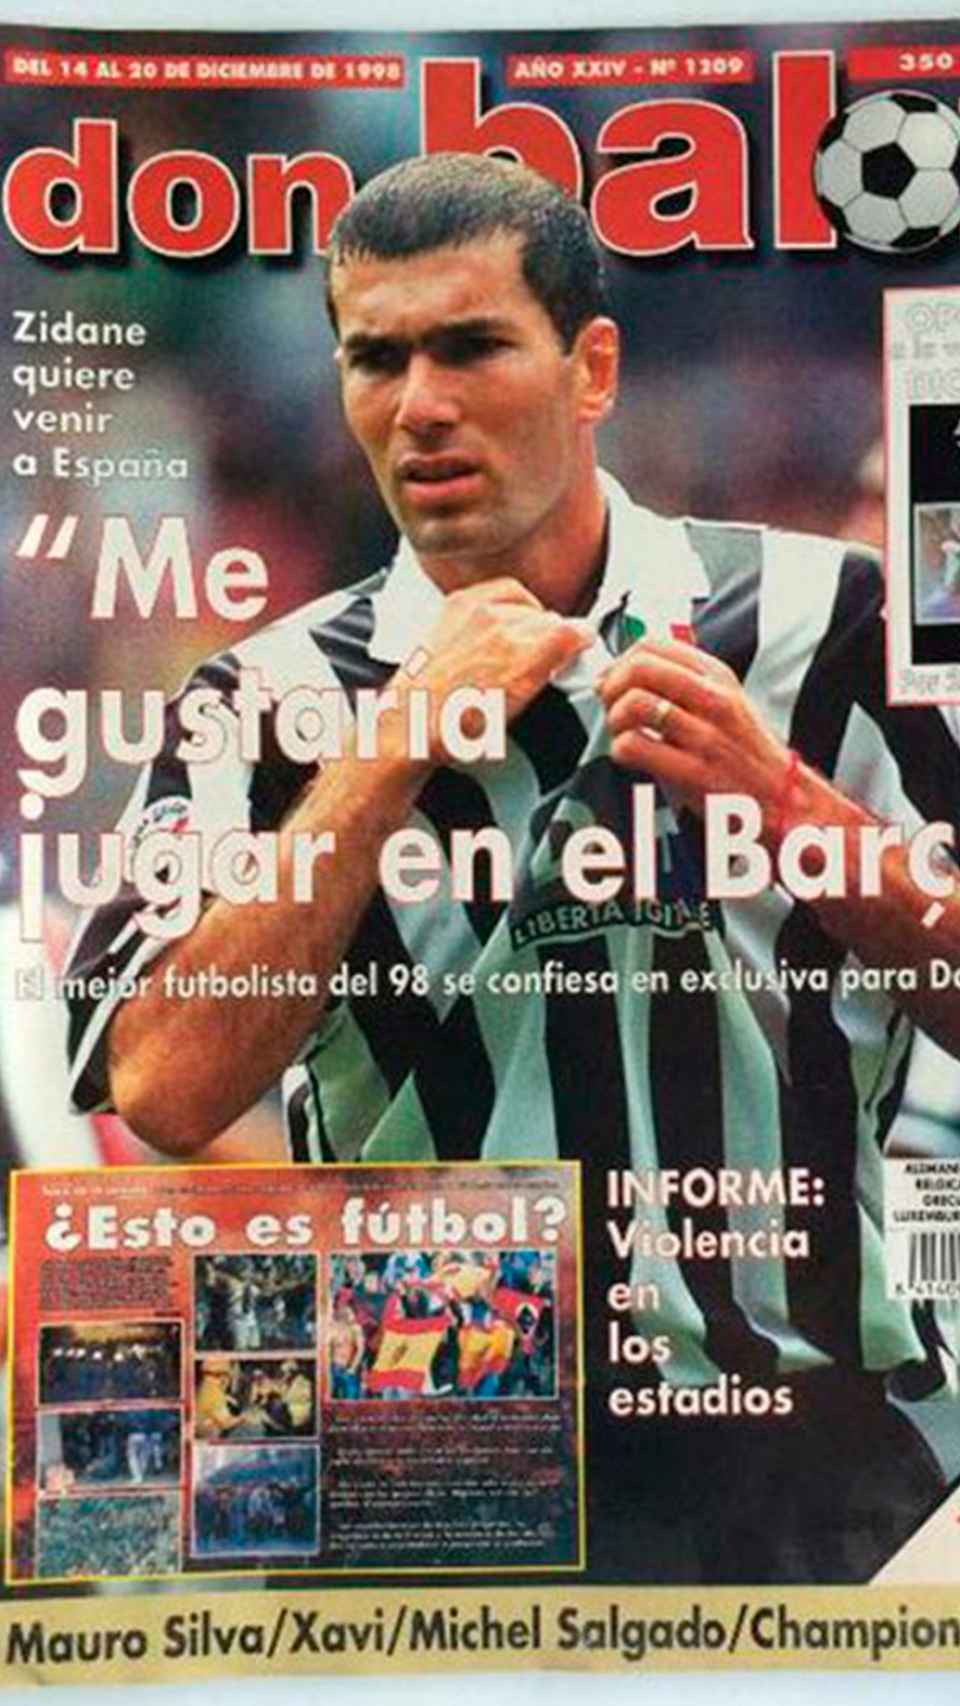 El día que Zidane confesó que quería jugar en el Barça